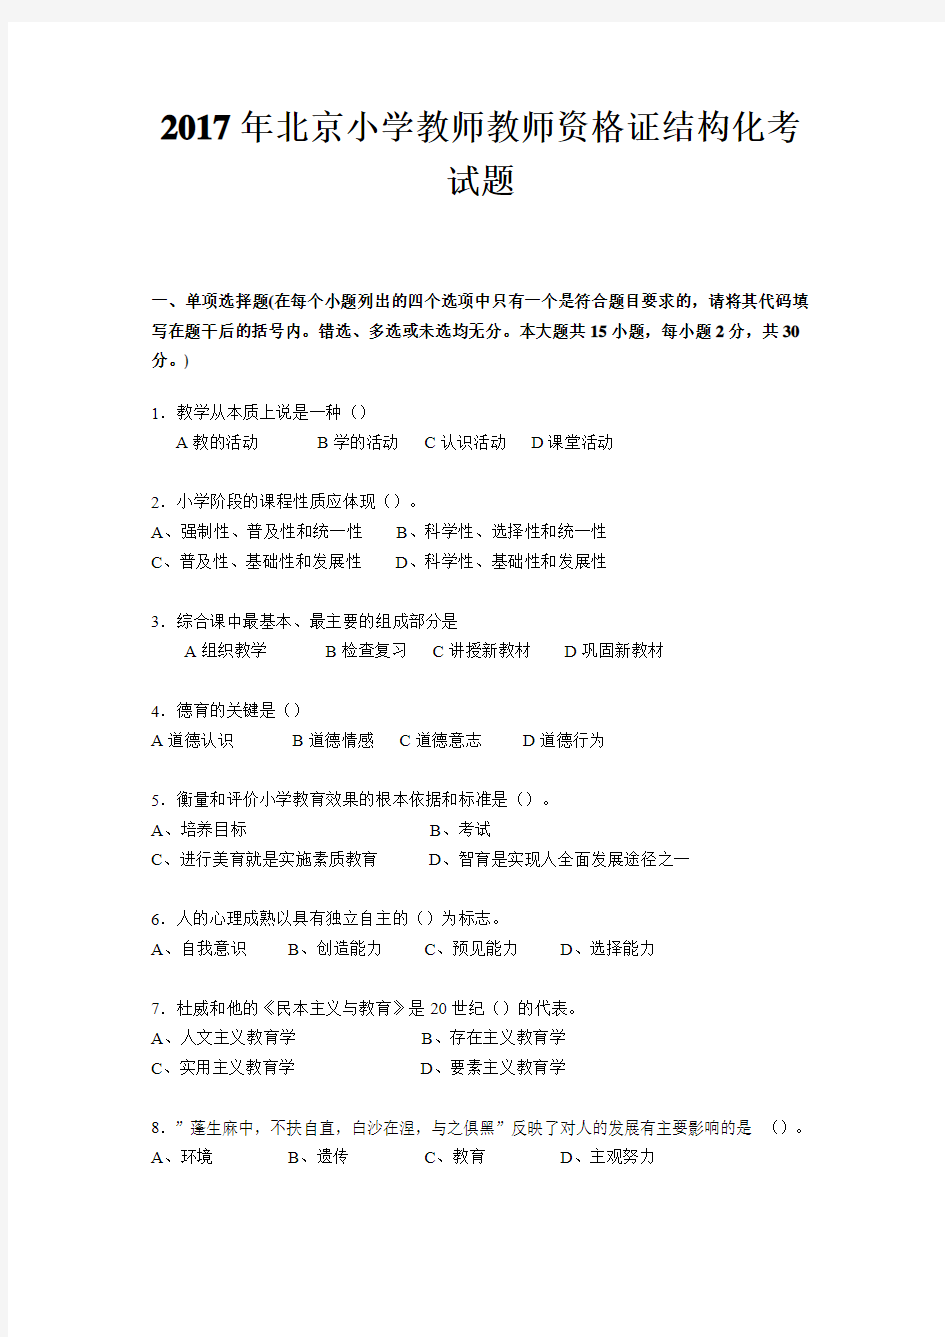 2017年北京小学教师教师资格证结构化考试题